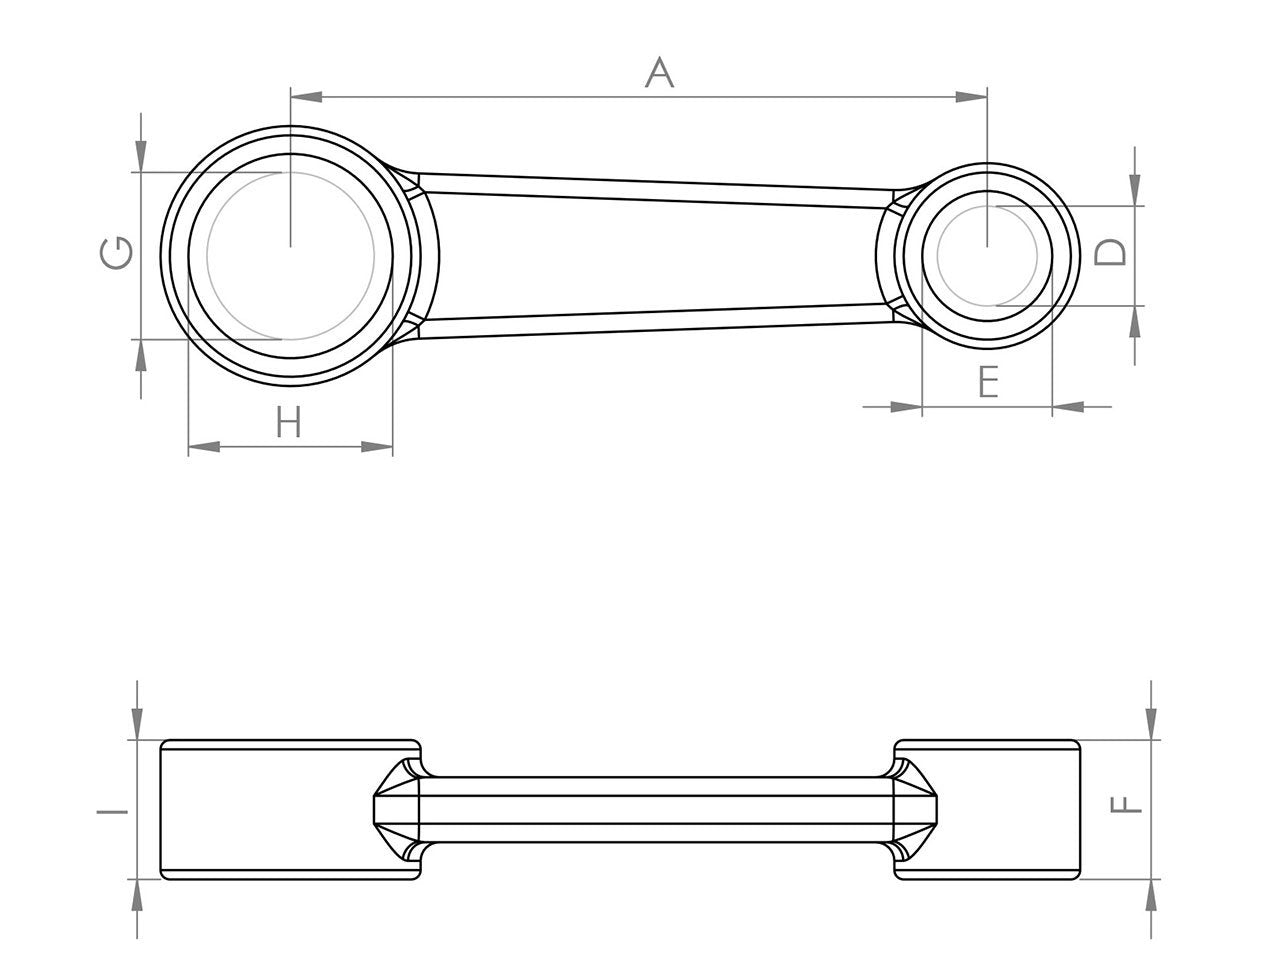 Zeichnung Barikit Pleuel für einen Peugeot Buxy Moped Motor mit Bemaßung.